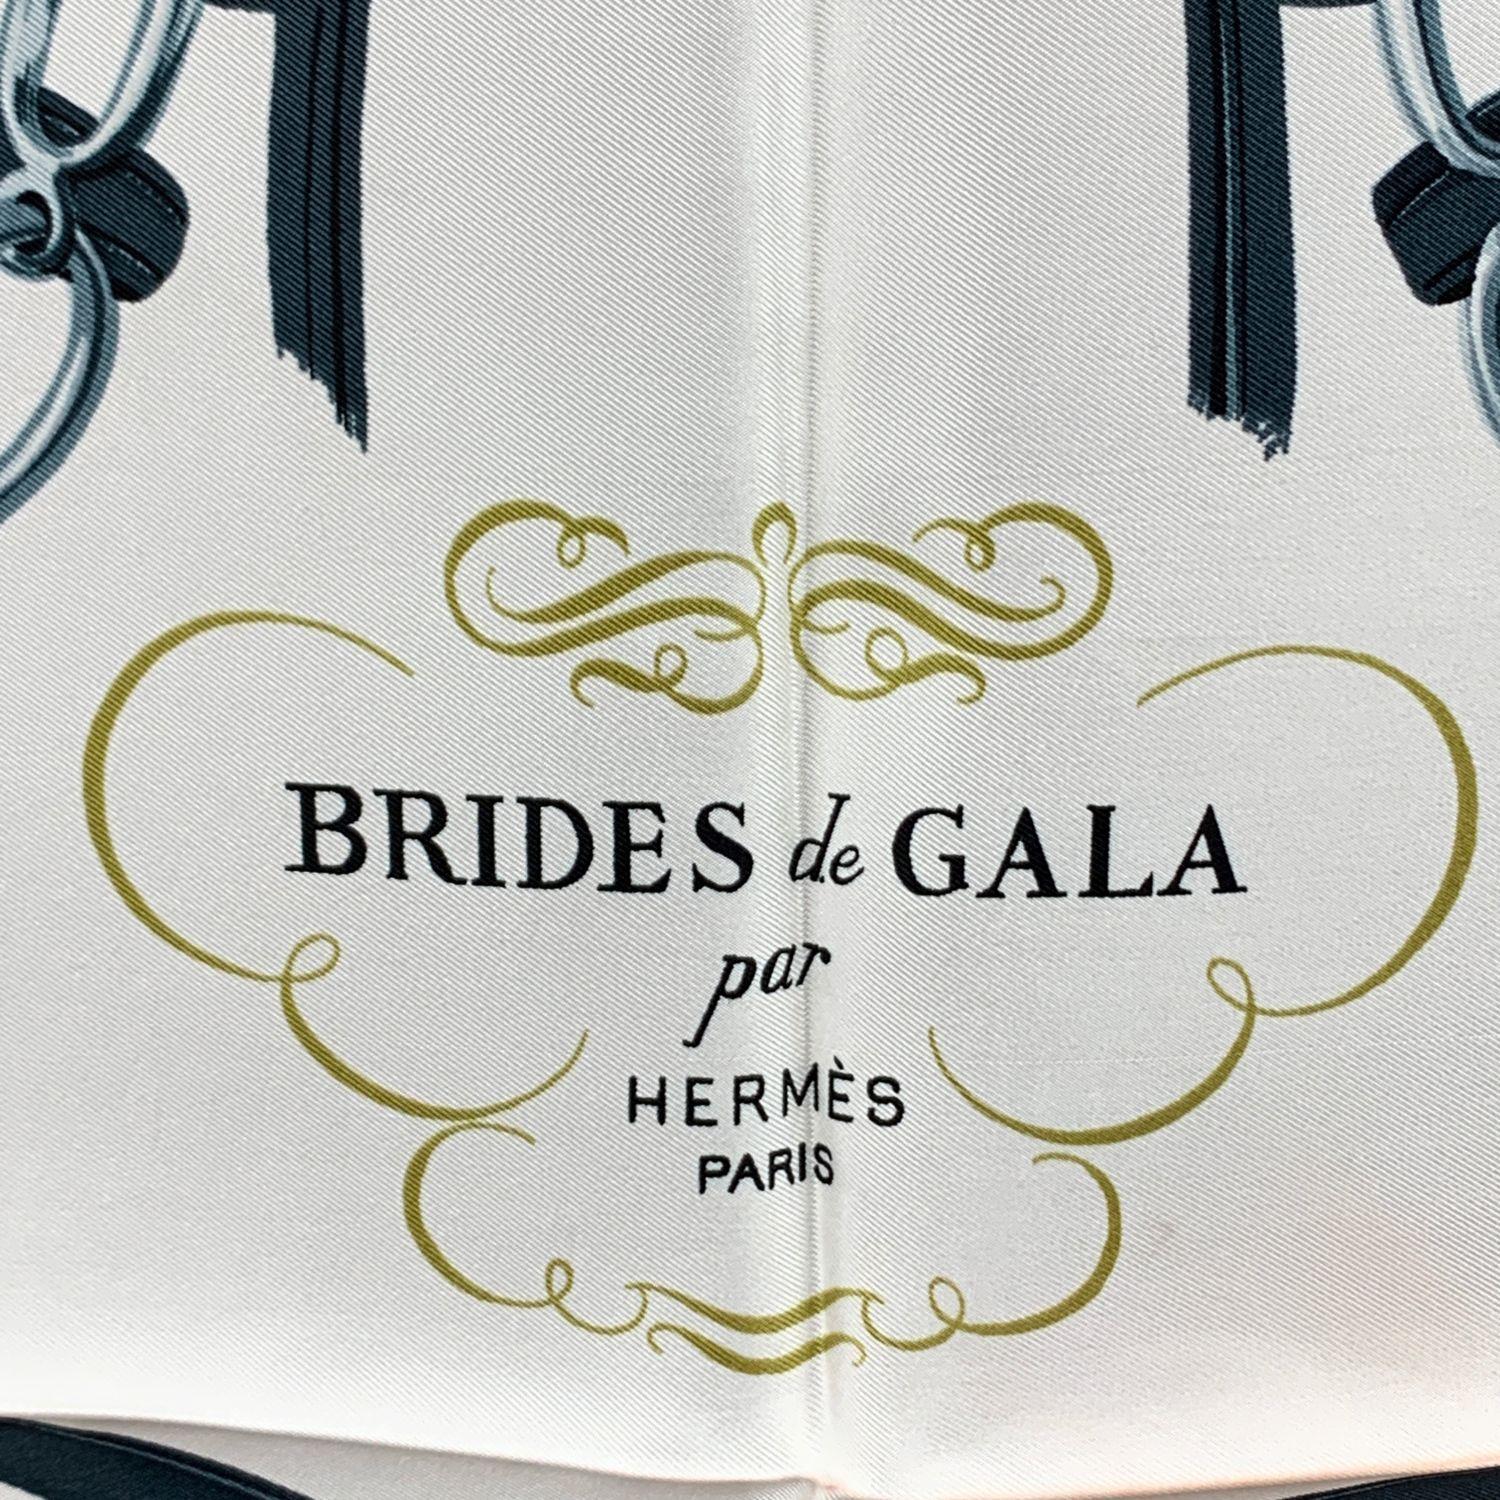 hermès brides de gala scarf history